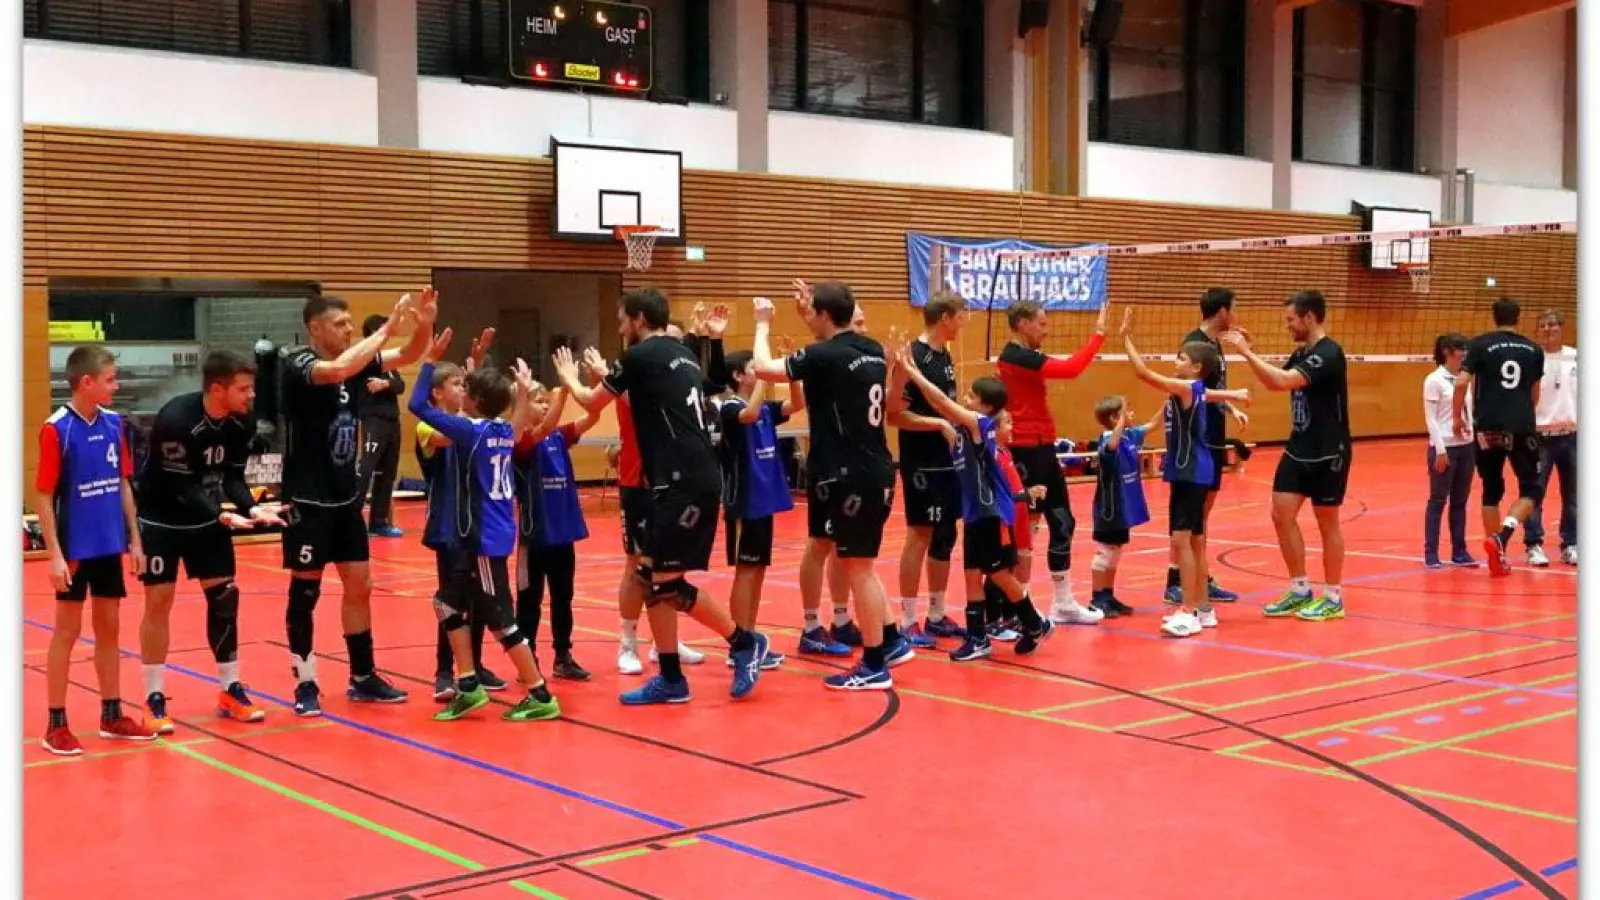 Die Herrenmannschaft des BSV 98 Bayreuth klatschen sich vor dem Spiel mit Spielern aus der eigenen Jugend ab. (Foto: BSV 98 Bayreuth)